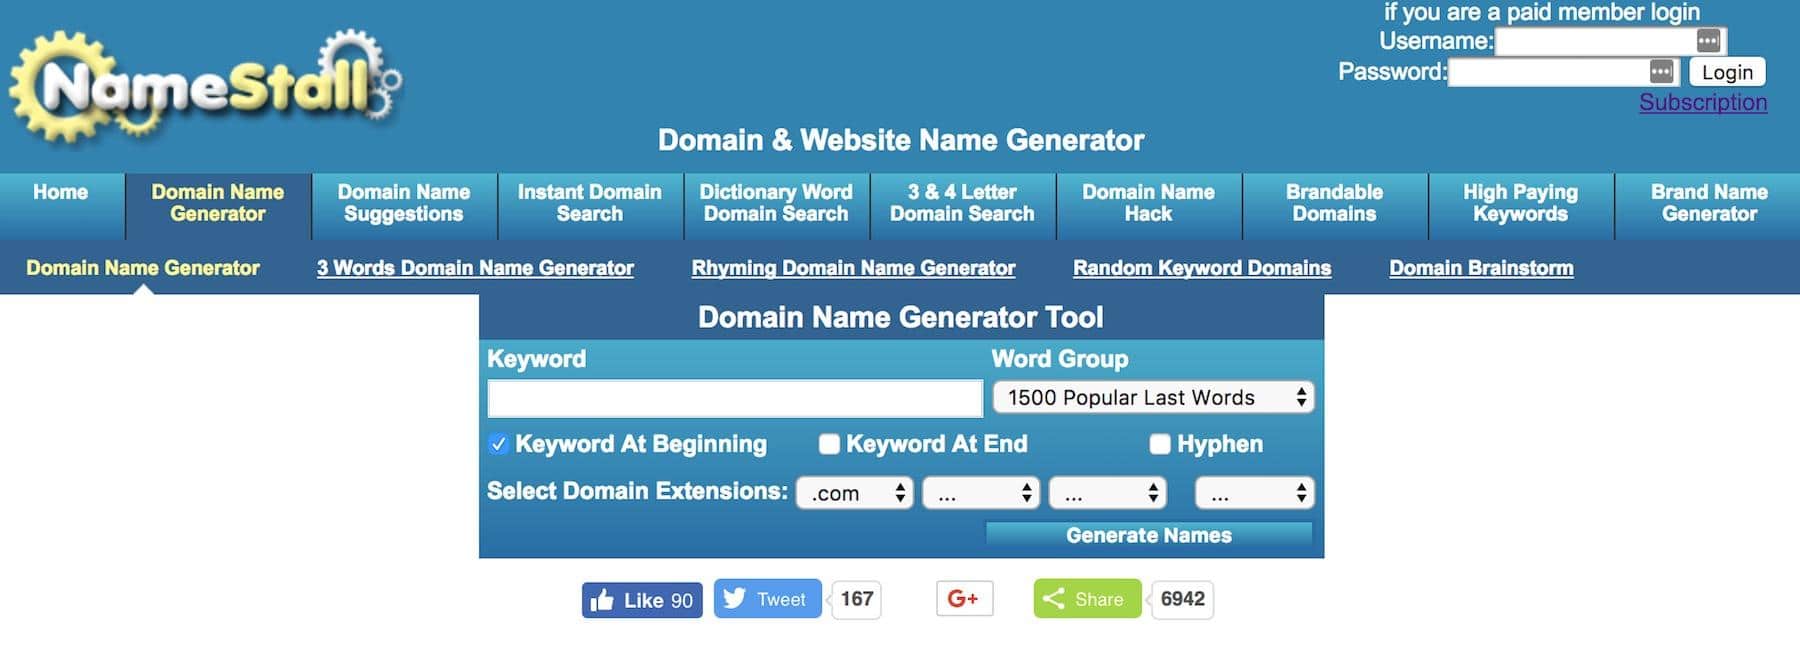 Domain Name Generator Tools